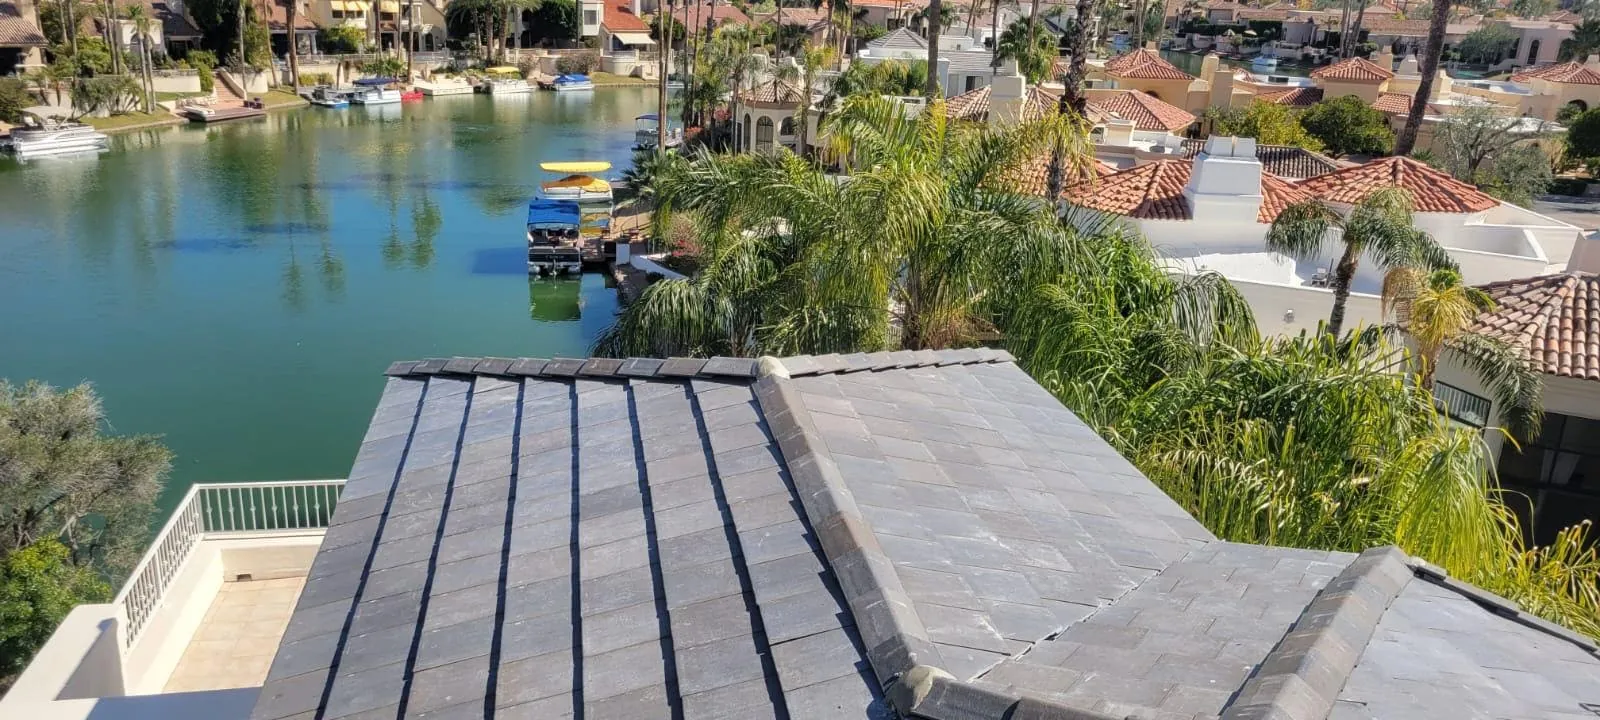 tile roof for longevity homeowner